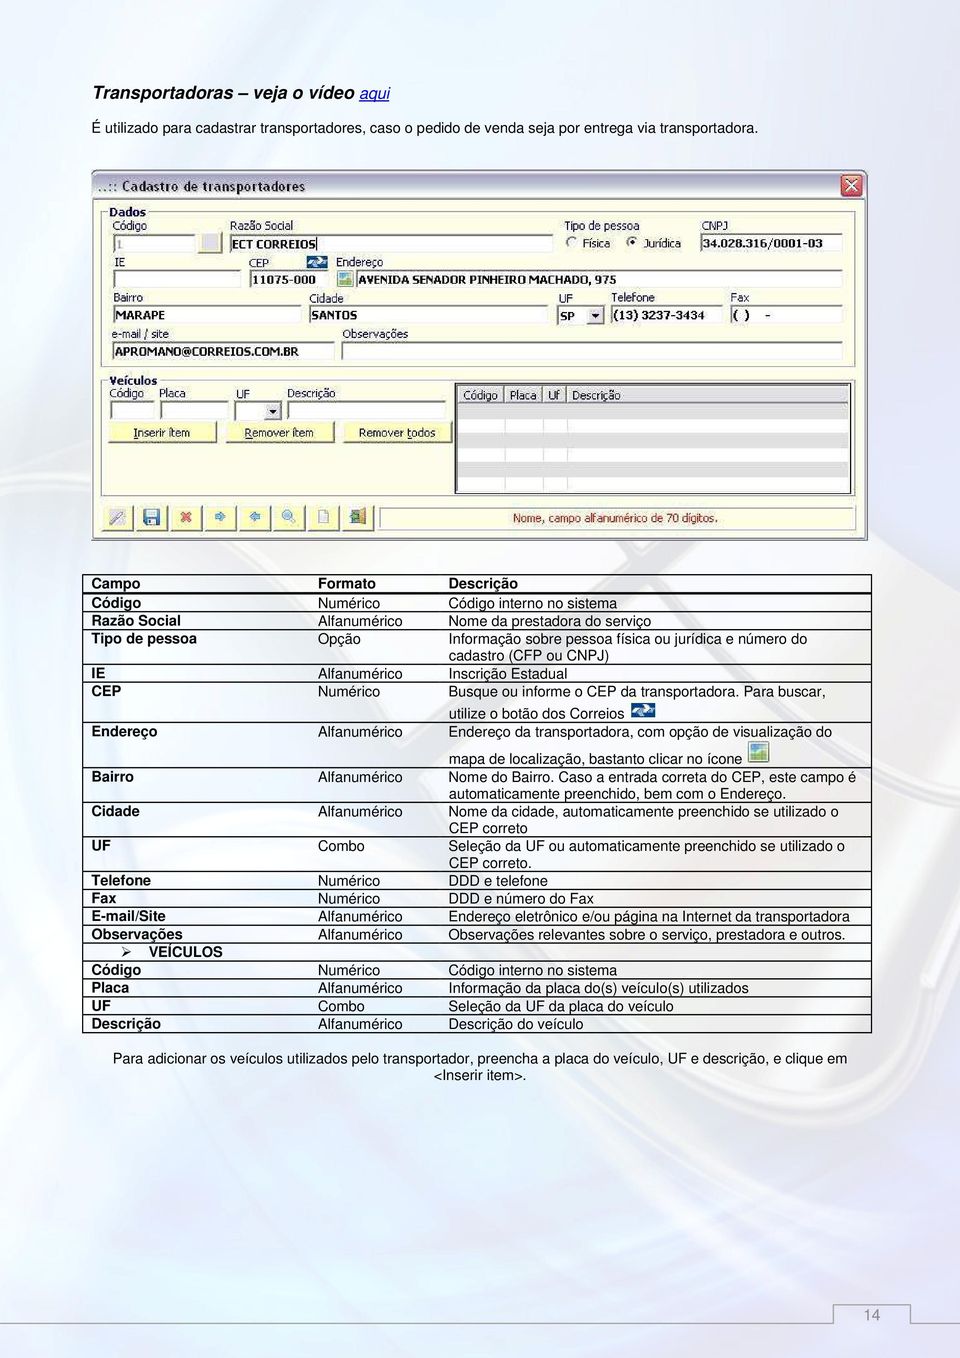 Alfanumérico Inscrição Estadual CEP Numérico Busque ou informe o CEP da transportadora.